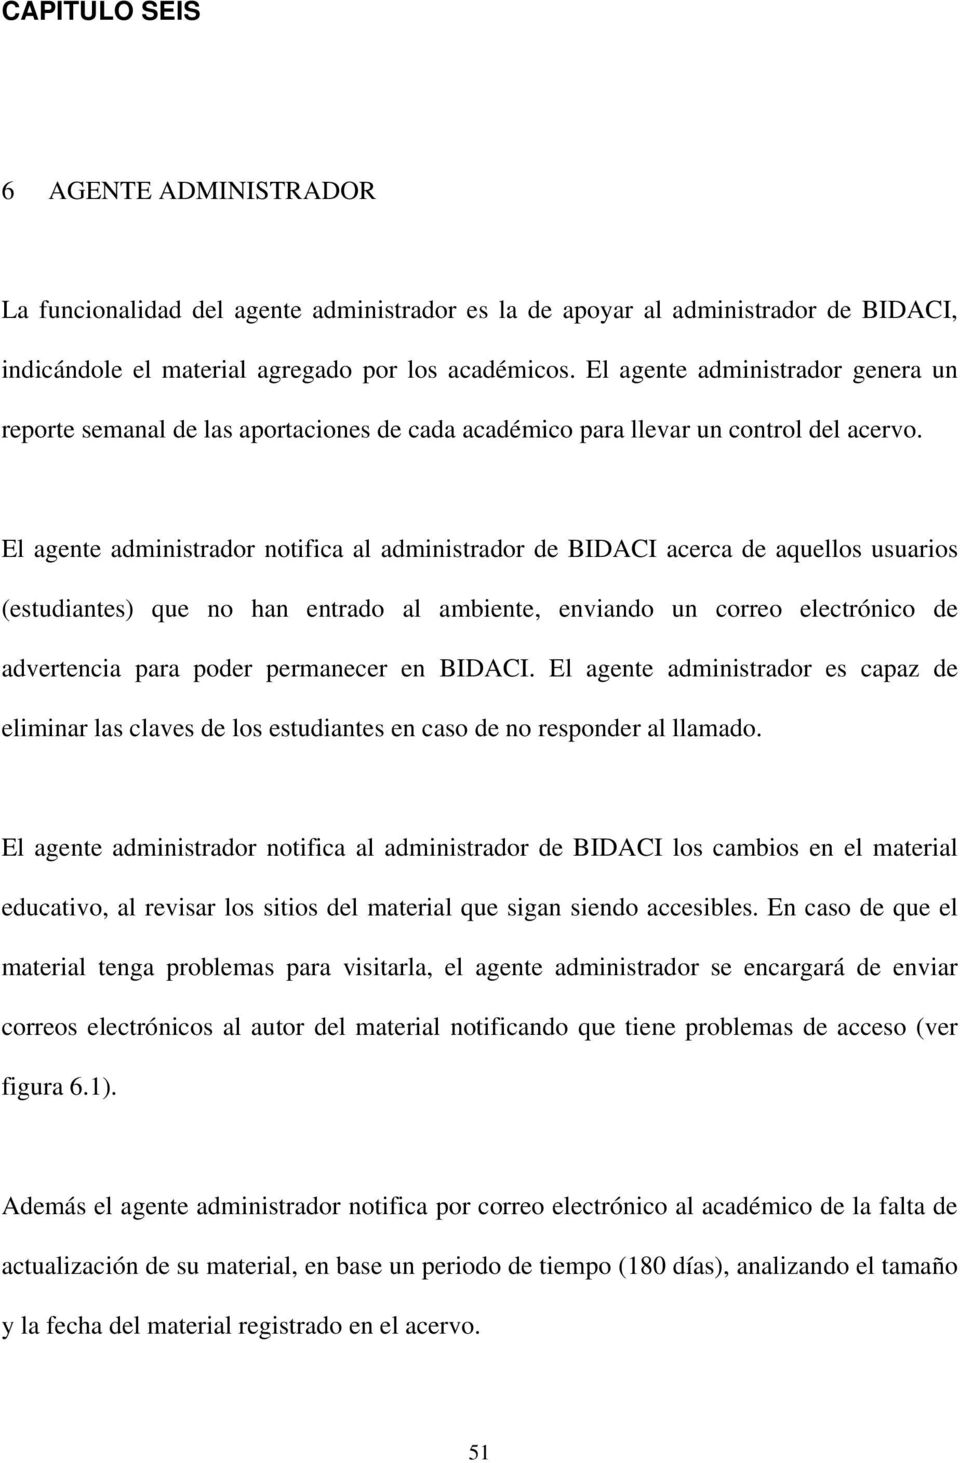 El agente administrador notifica al administrador de BIDACI acerca de aquellos usuarios (estudiantes) que no han entrado al ambiente, enviando un correo electrónico de advertencia para poder